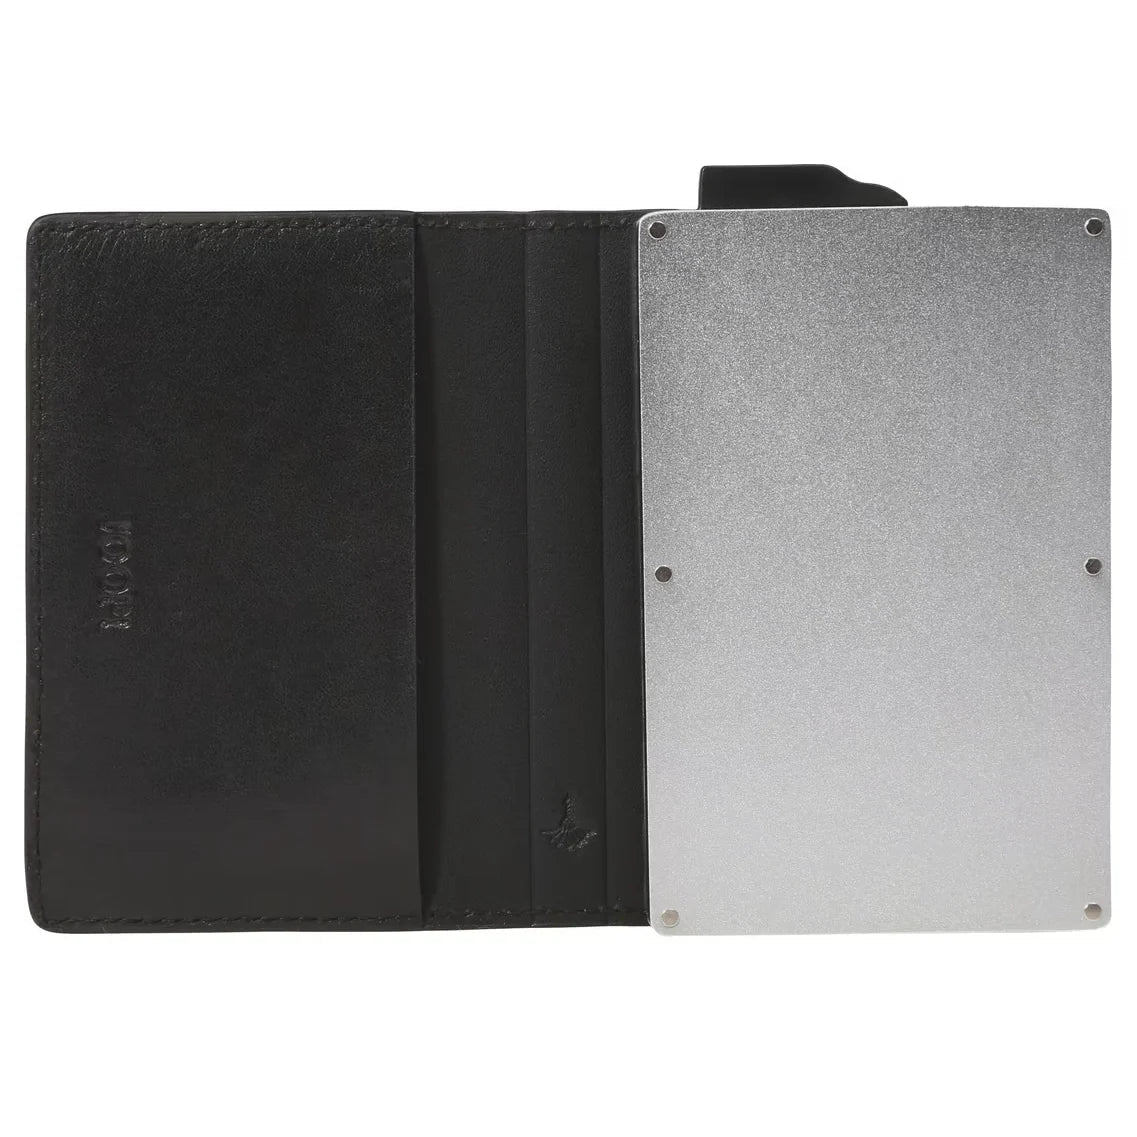 Joop Cardona C-One E-Cage SV8 wallet RFID 10 cm - Black